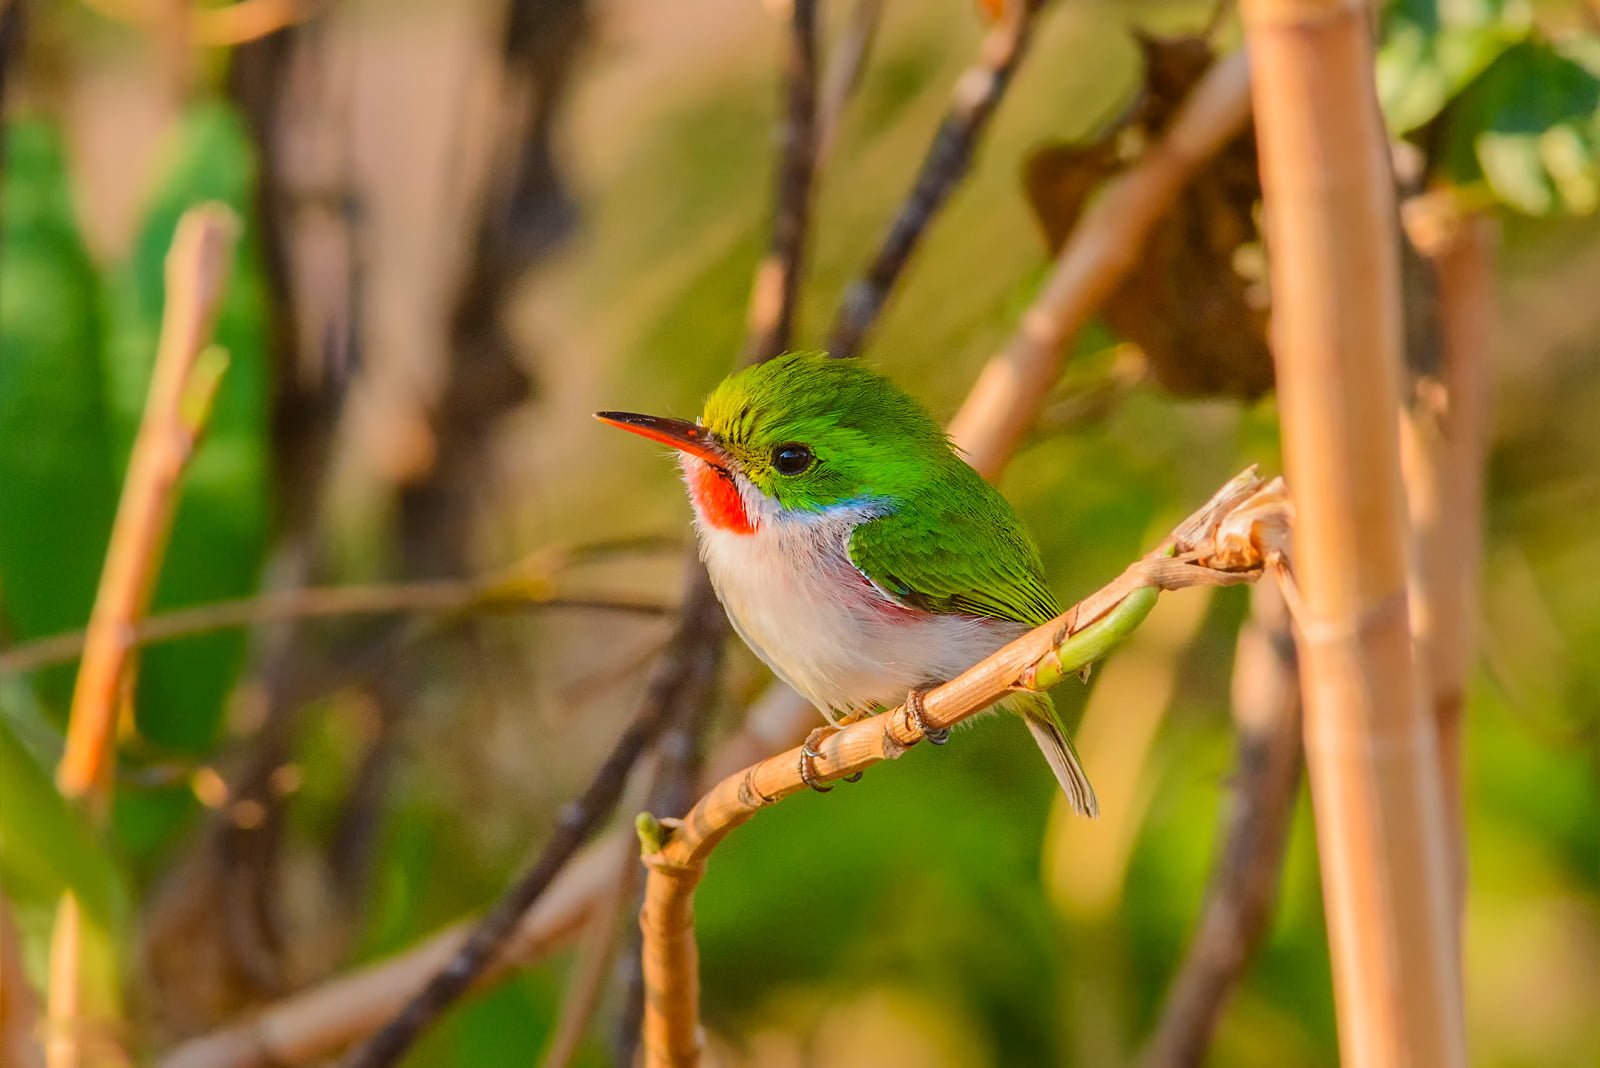 Cuban Tody Small Bird Images